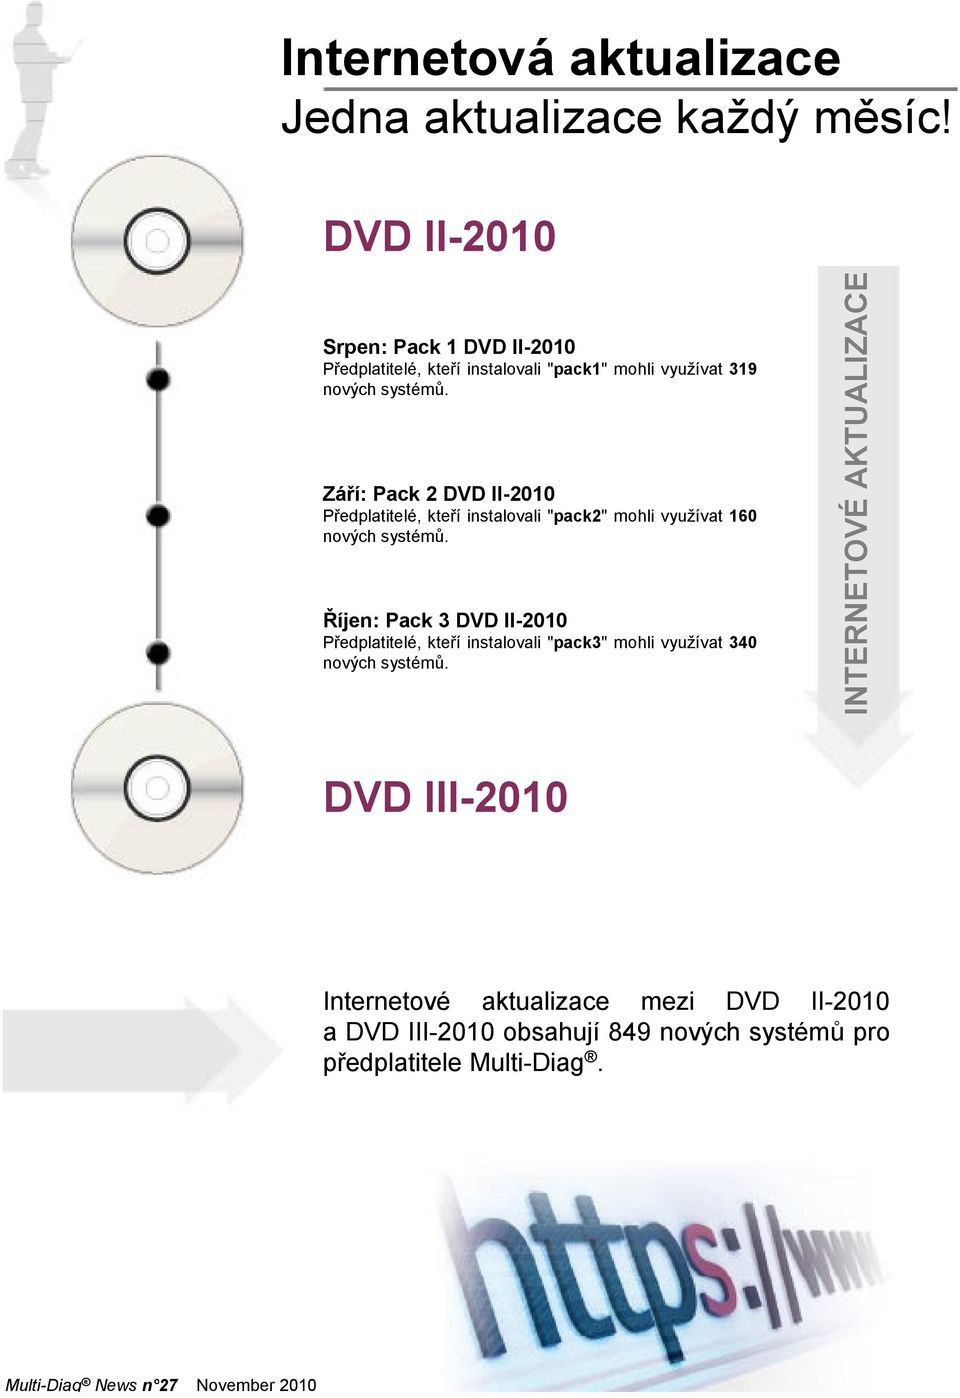 Září: Pack 2 DVD II-2010 Předplatitelé, kteří instalovali "pack2" mohli využívat 160 nových systémů.